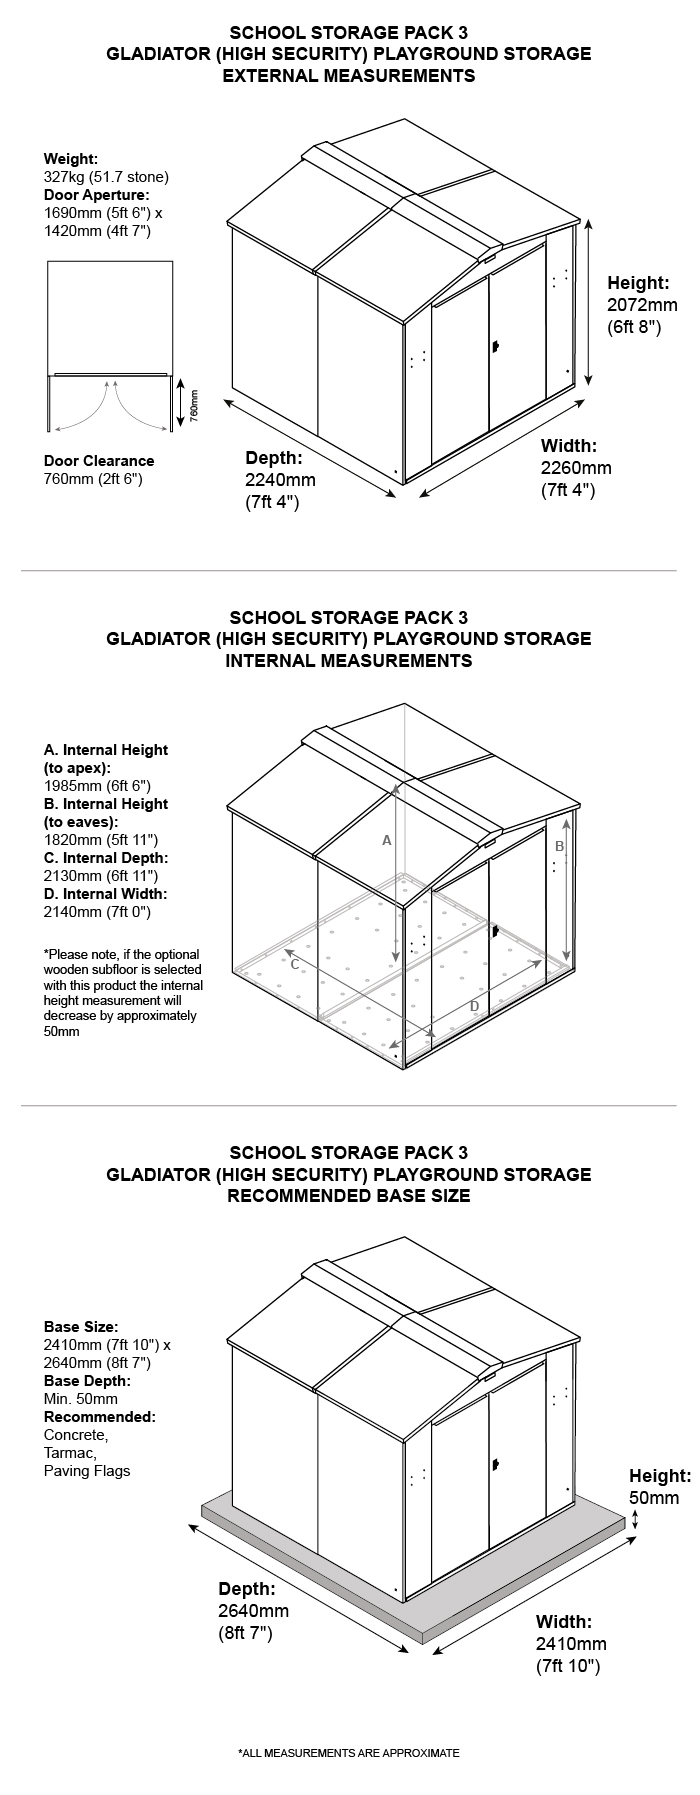 School Storage Pack 3 Dimensions